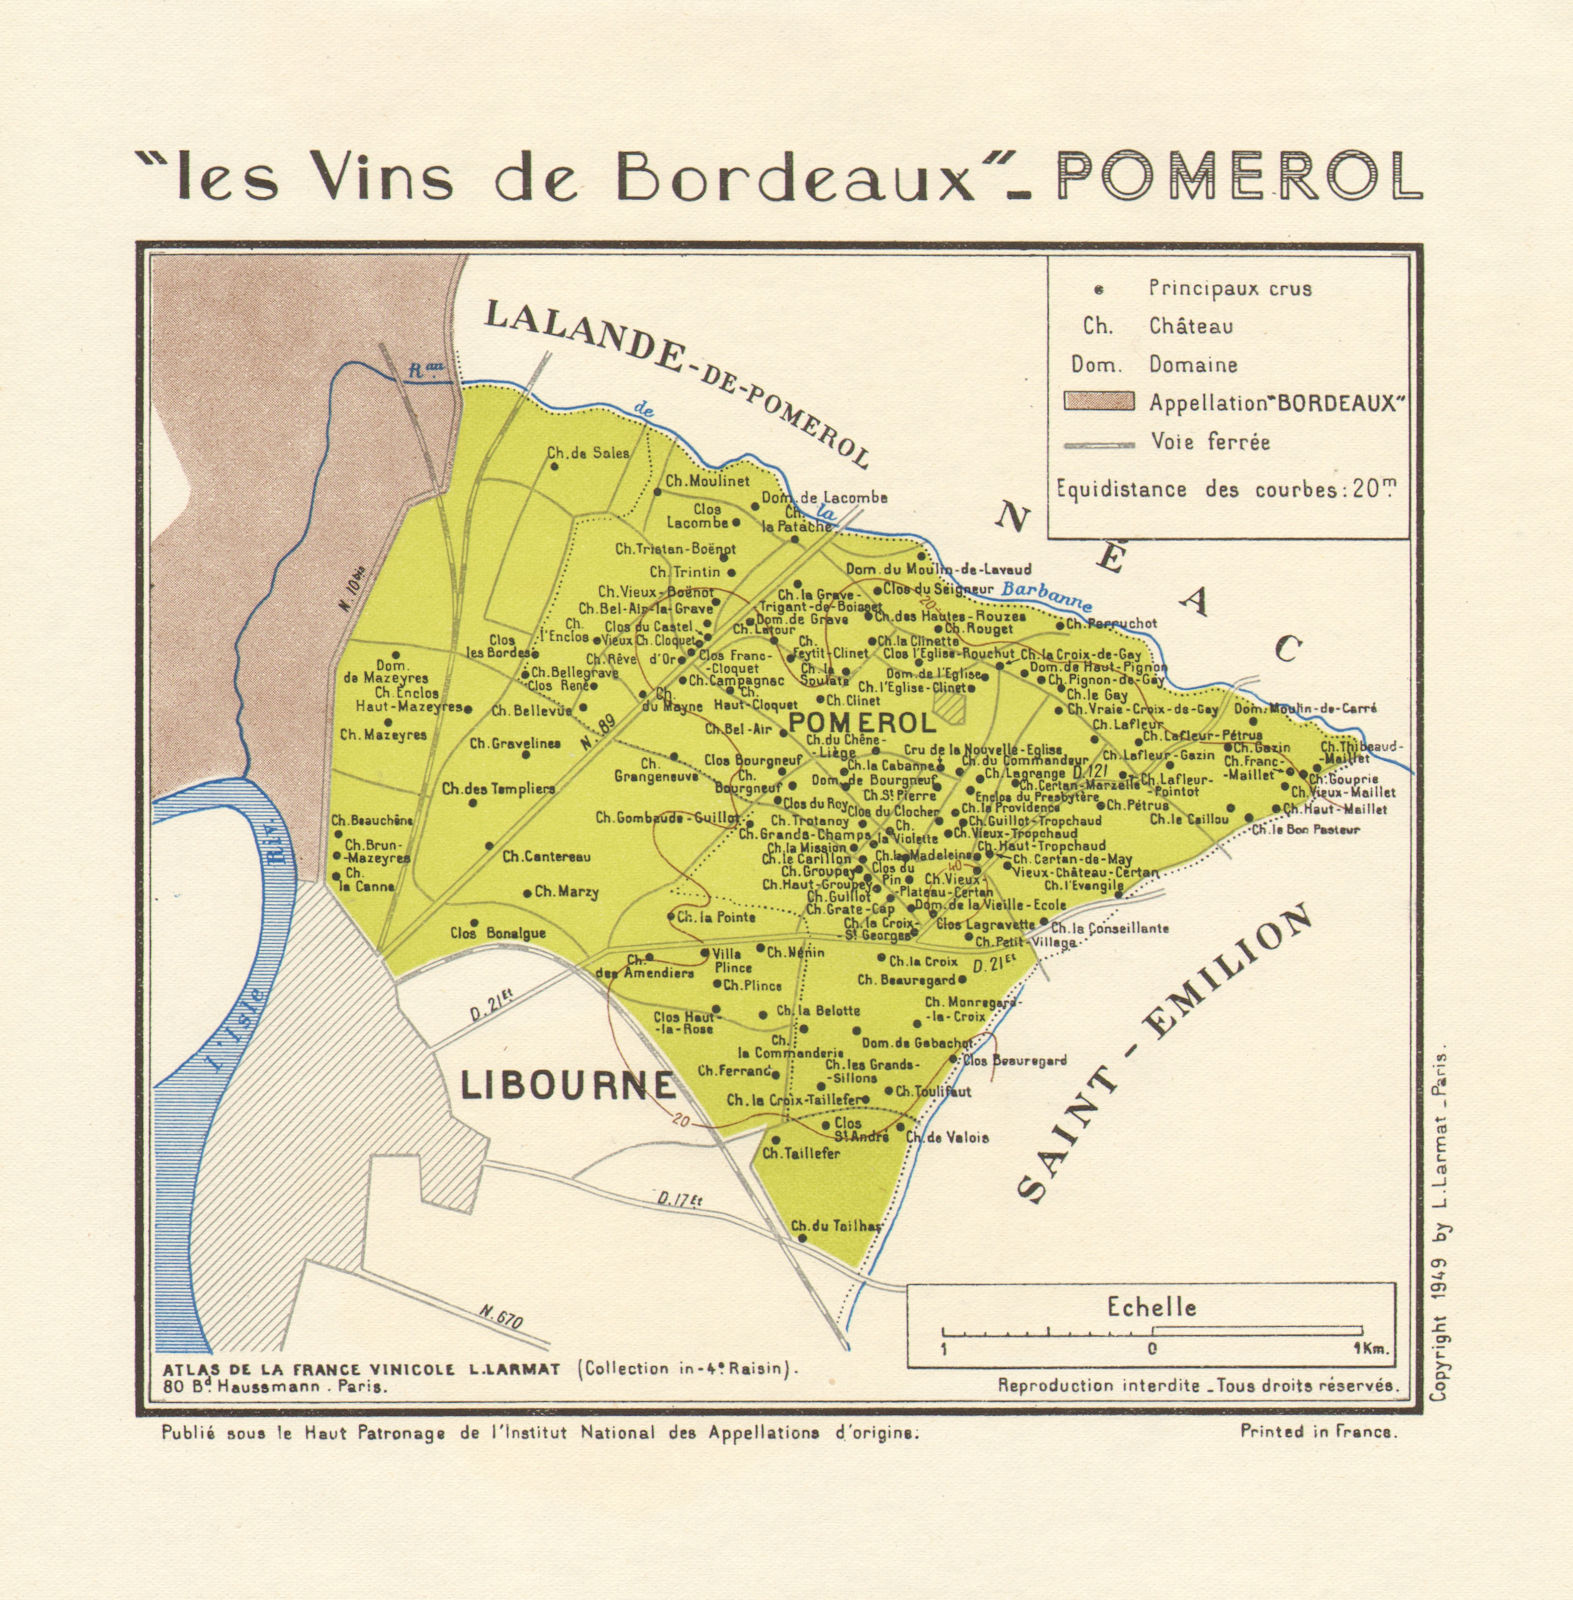 BORDEAUX WINE. Les Vins de Bordeaux - Pomerol. Larmat 1949 old vintage map